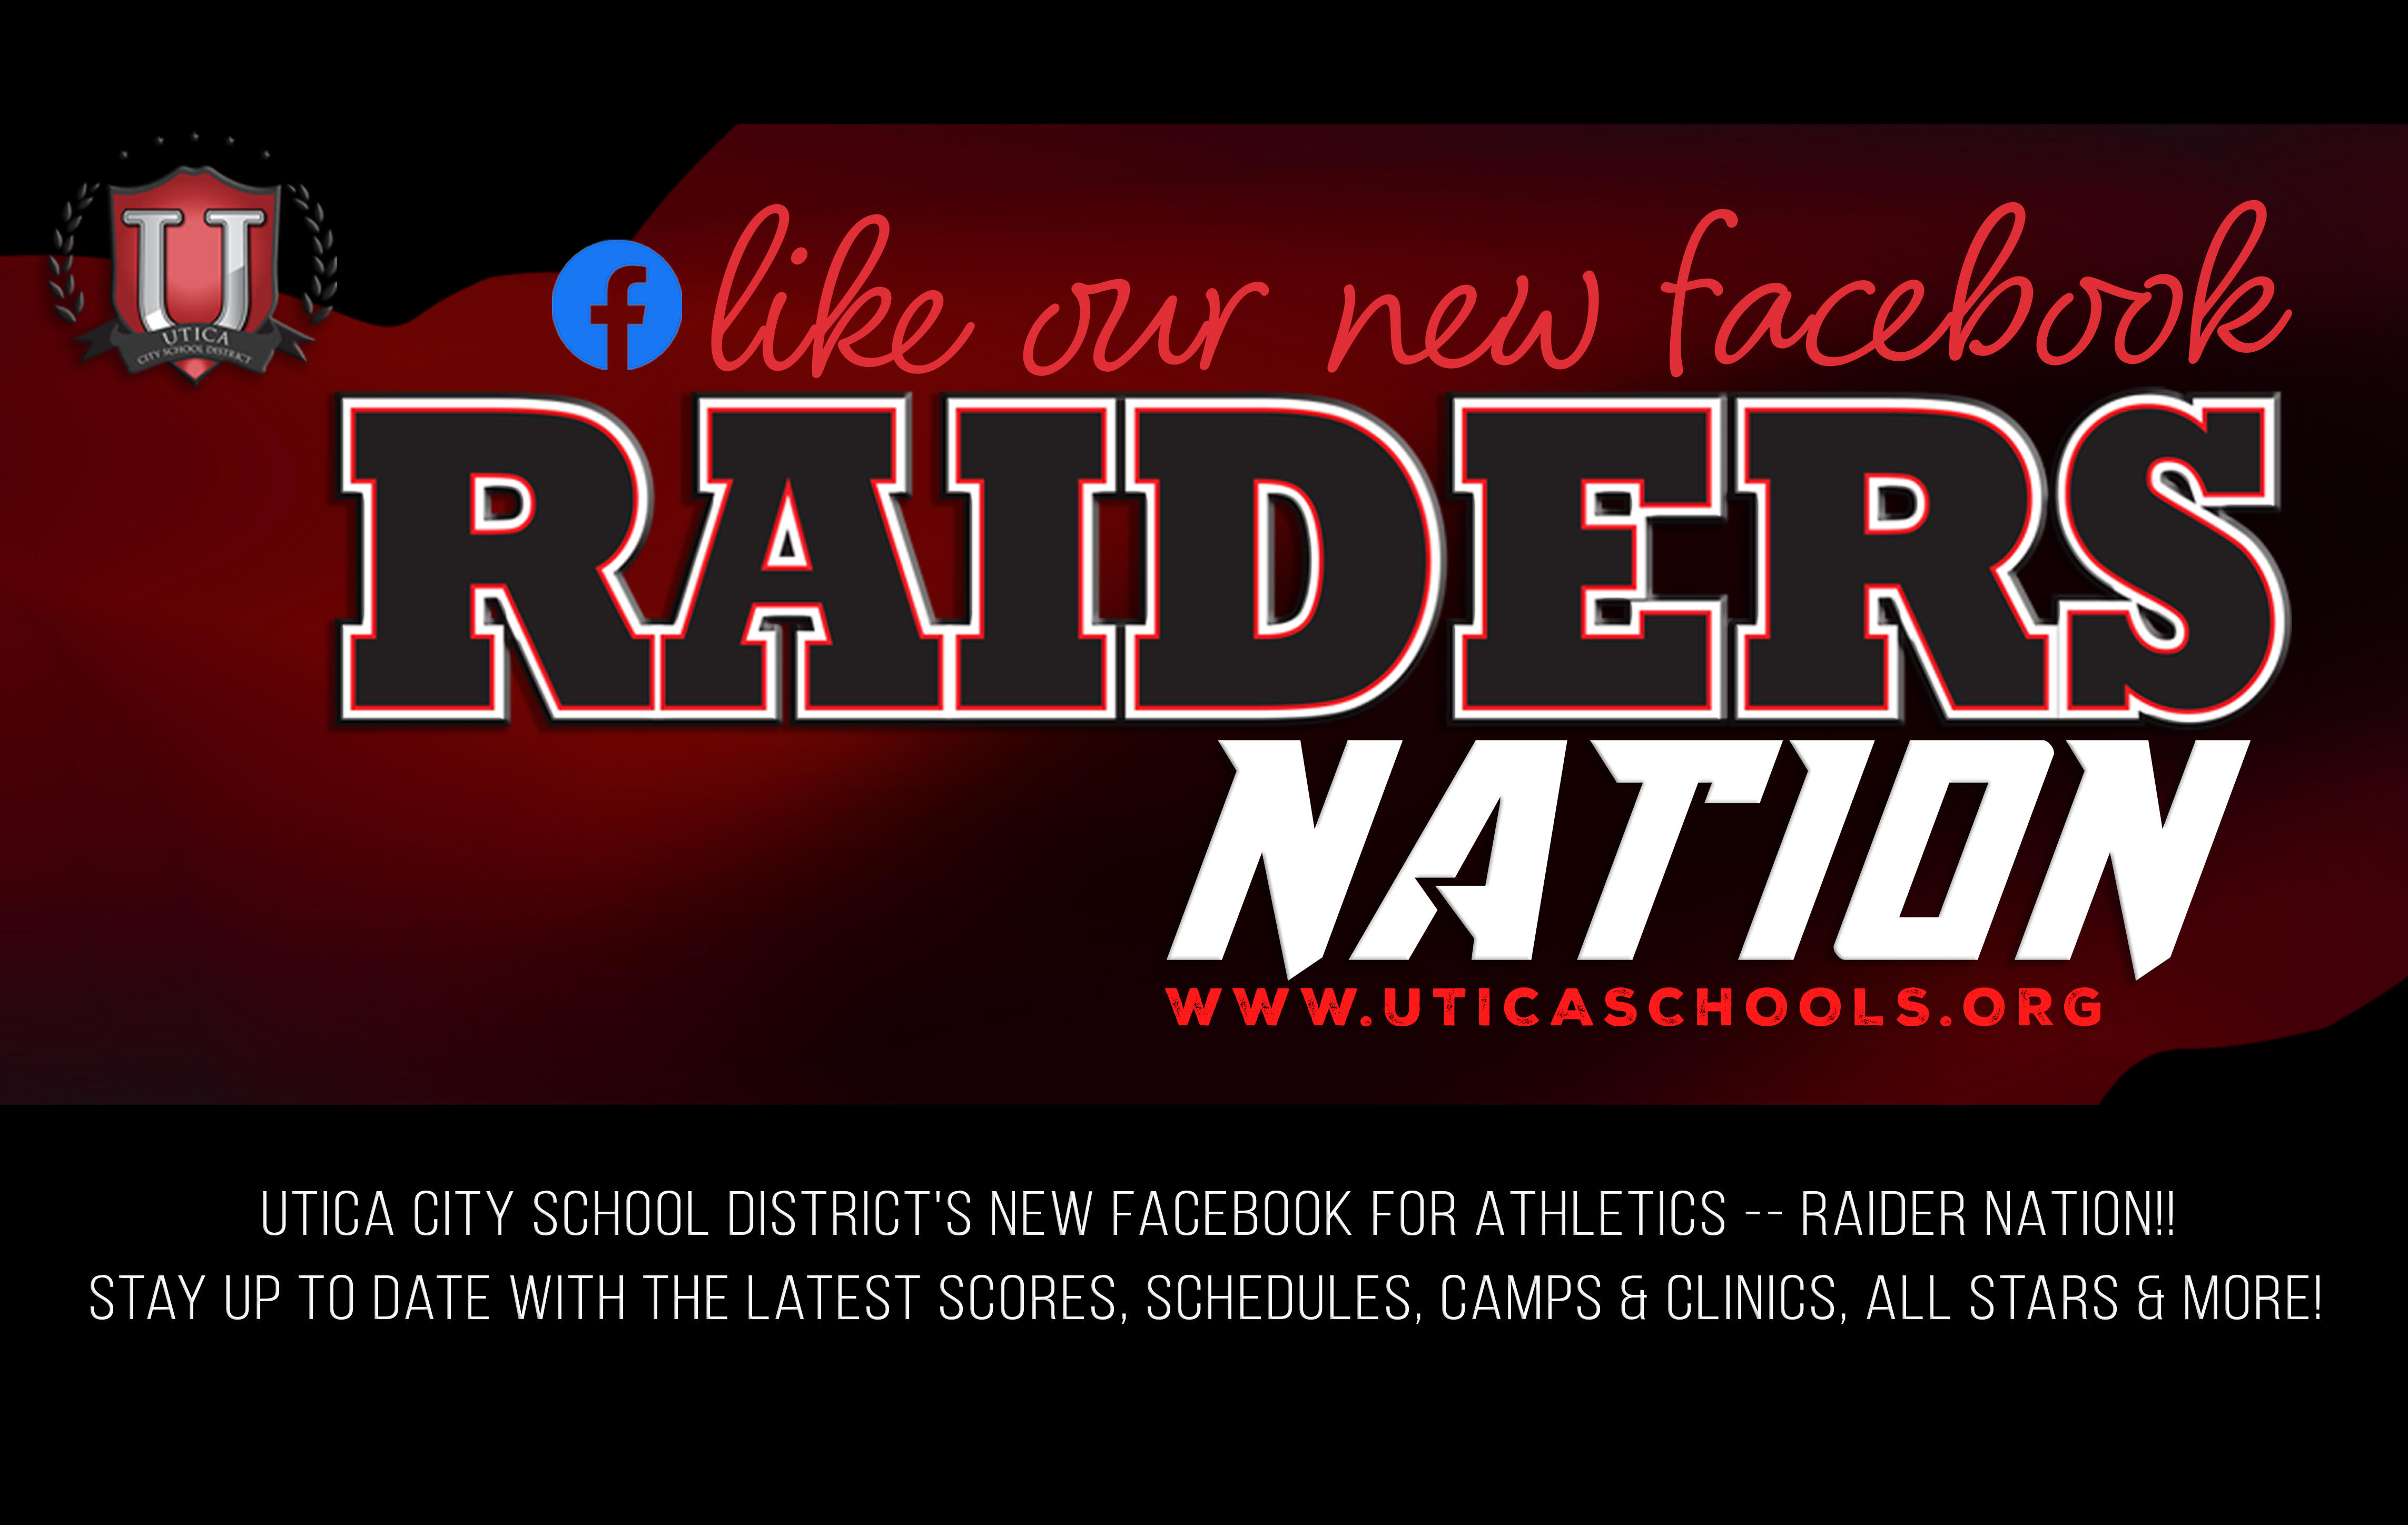 لینک به Raiders Nation فیسبوک